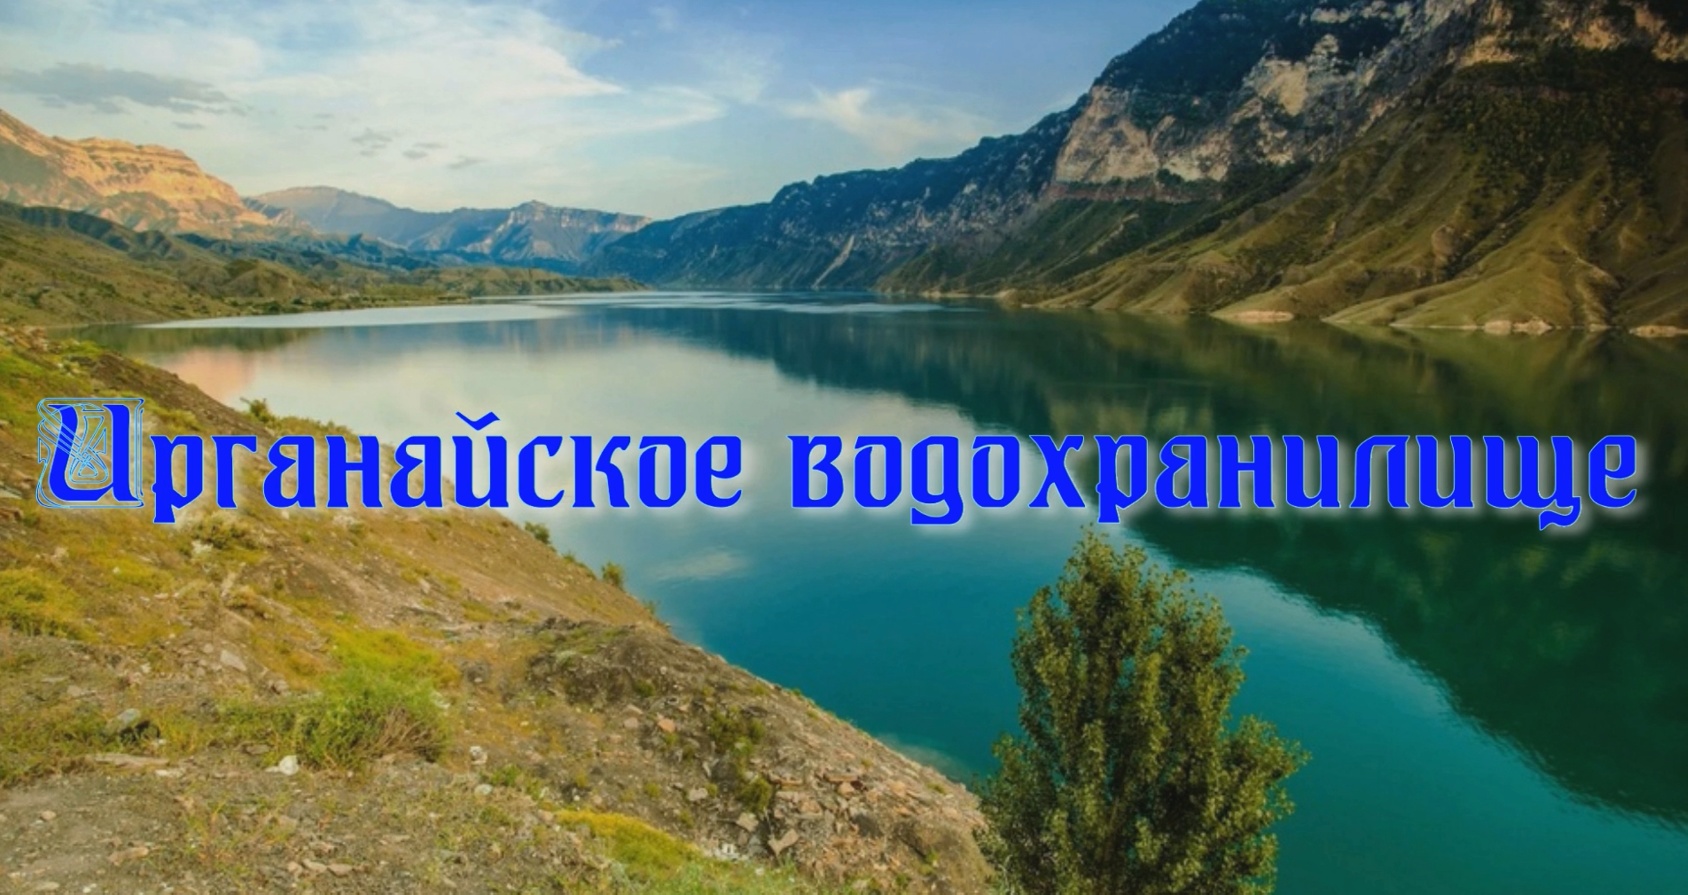 Ирганайское водохранилище в республике Дагестан